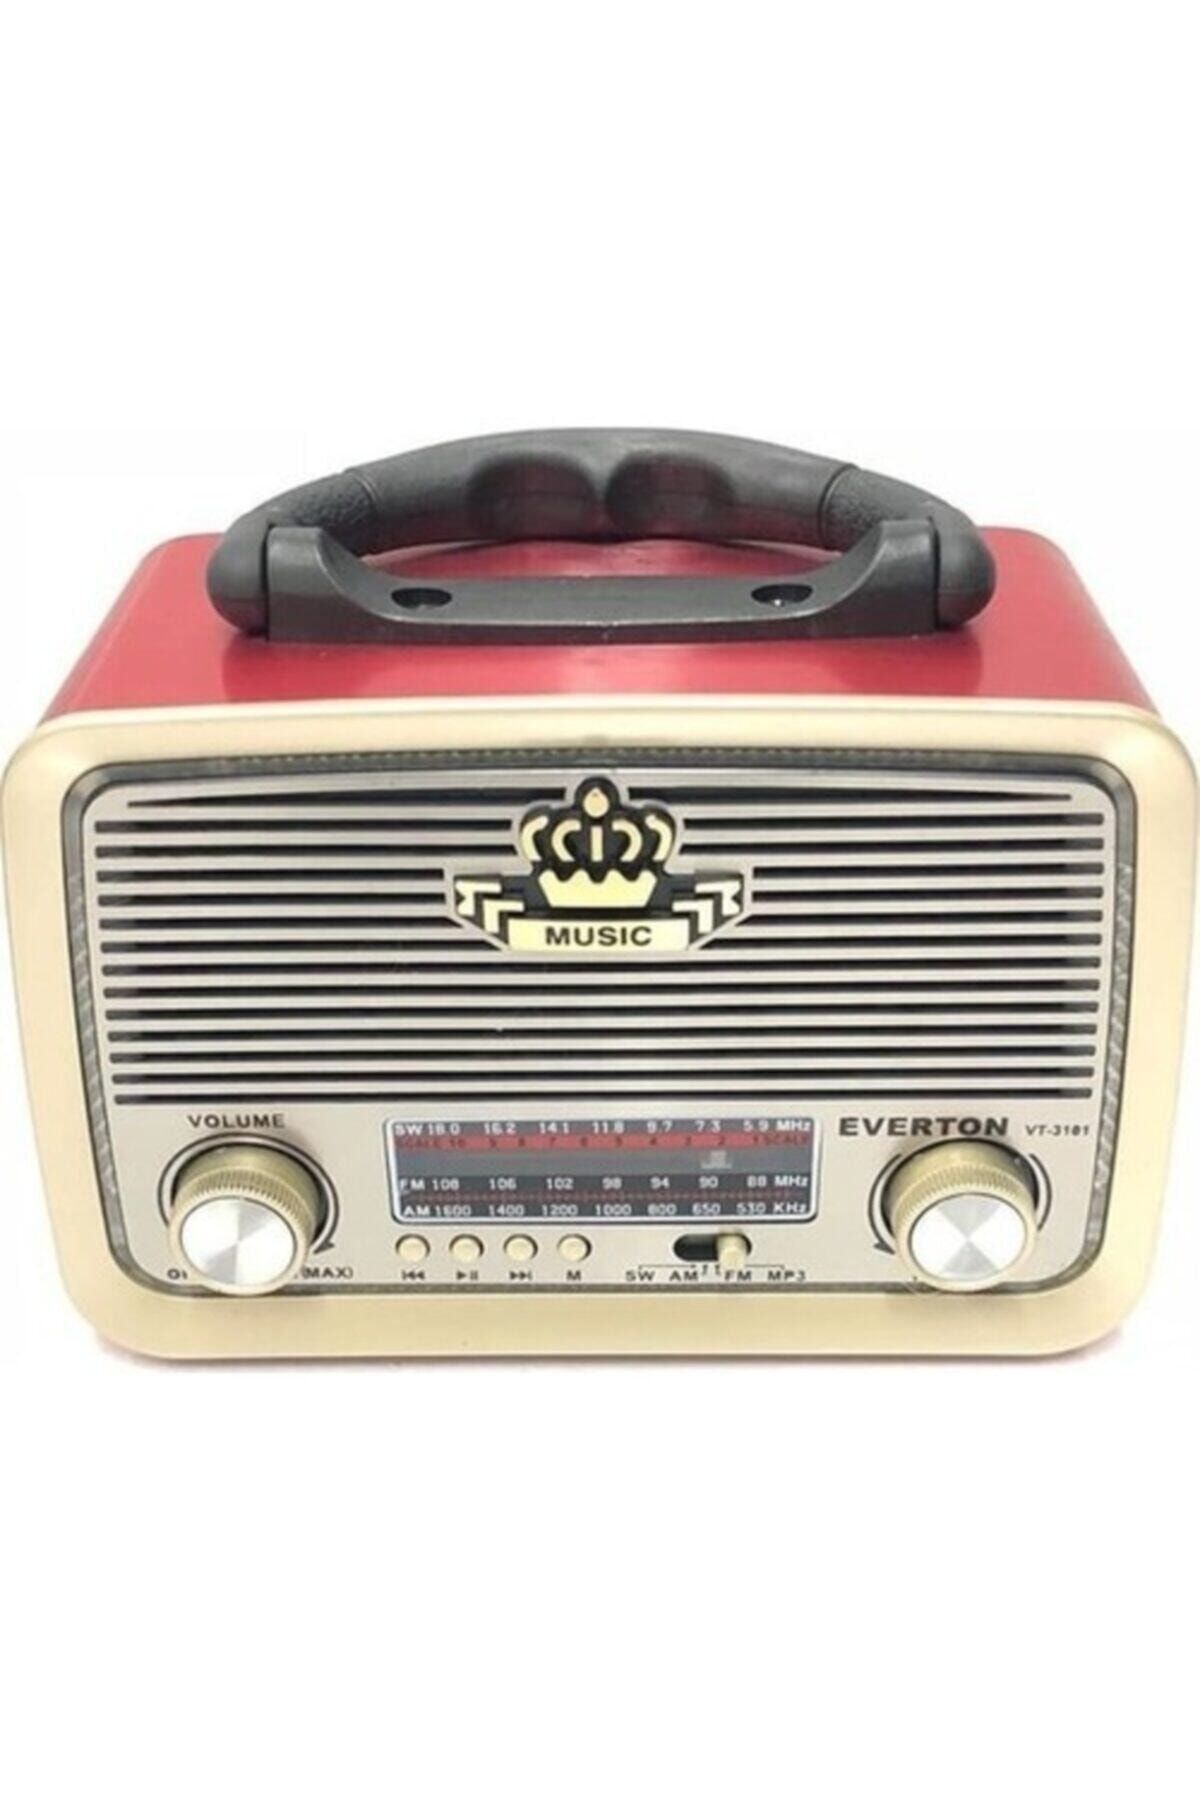 Everton Rt-301 Nostaljik Görünümlü Bluetoothlu Mp3 Çalar Radyo Müzik Kutusu Kırmızı